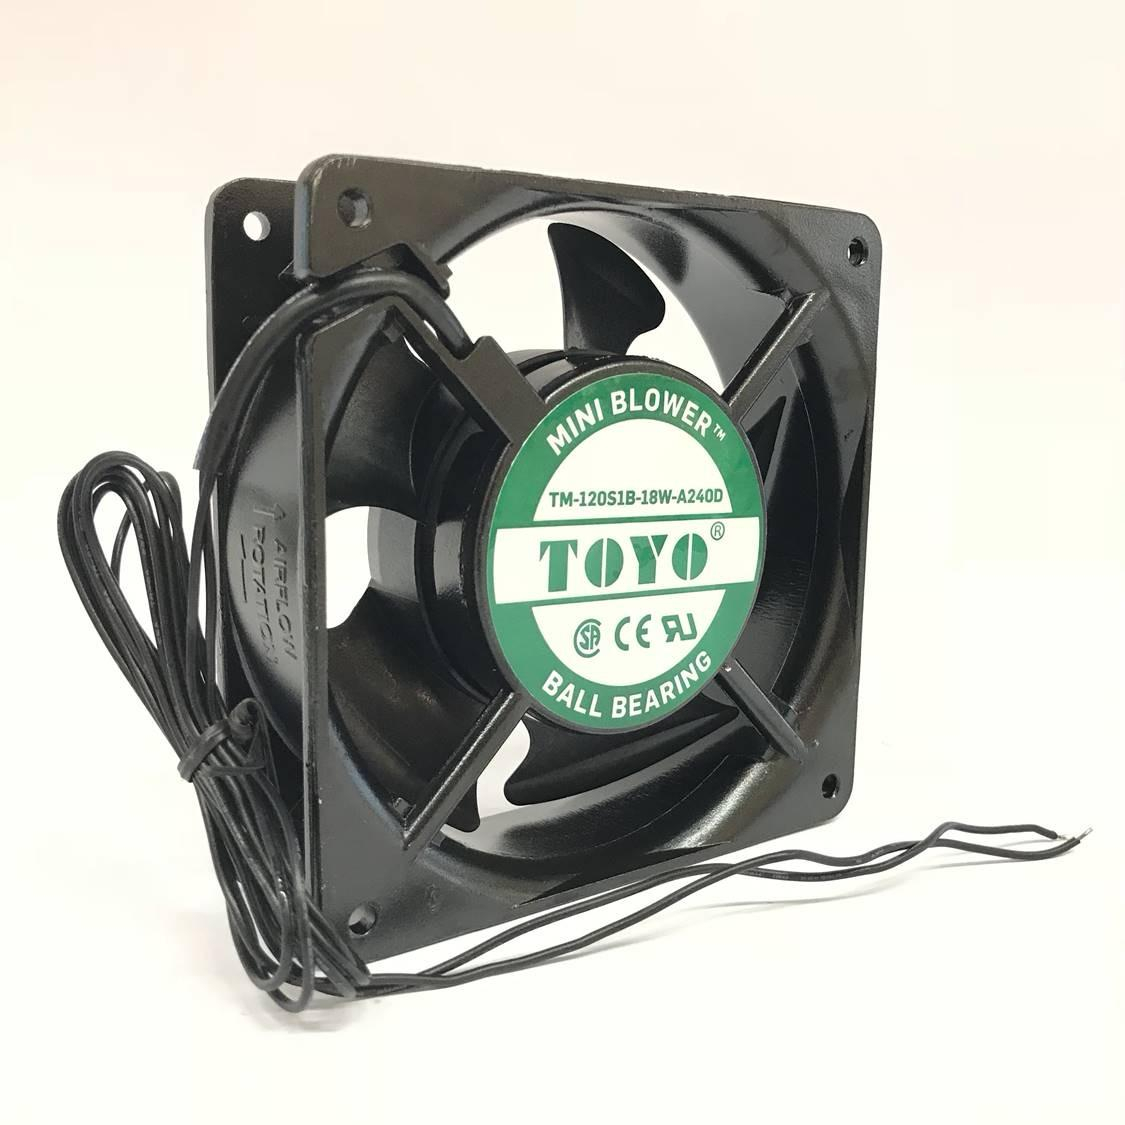 Toyo 4 Ac Ball Bearing Mini Blower in sizing 1125 X 1125